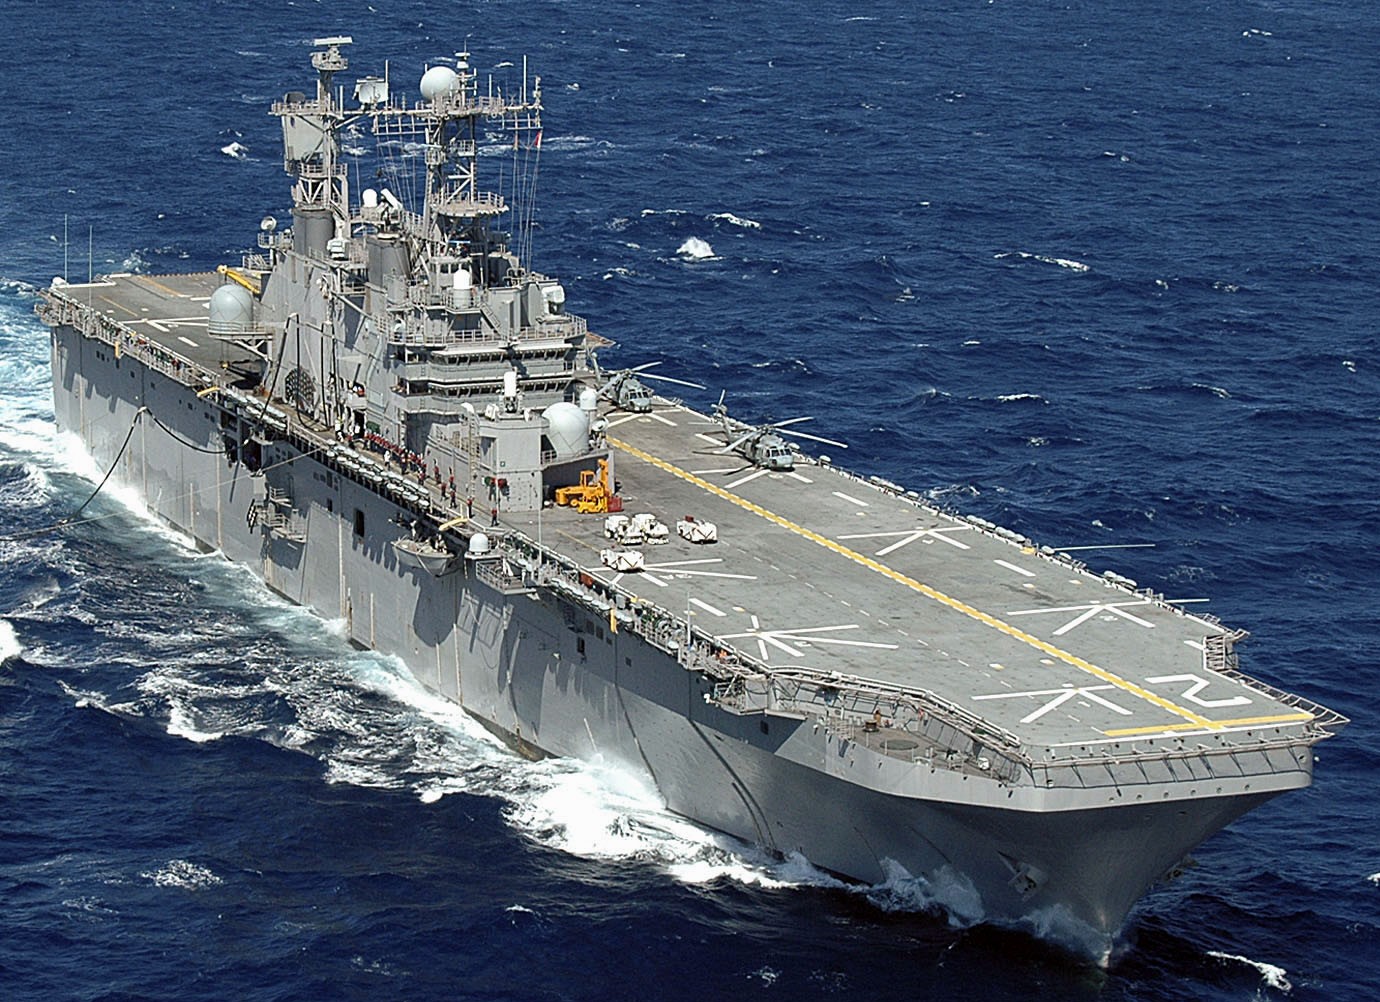 lha-2 uss saipan tarawa class amphibious assault ship us navy 25